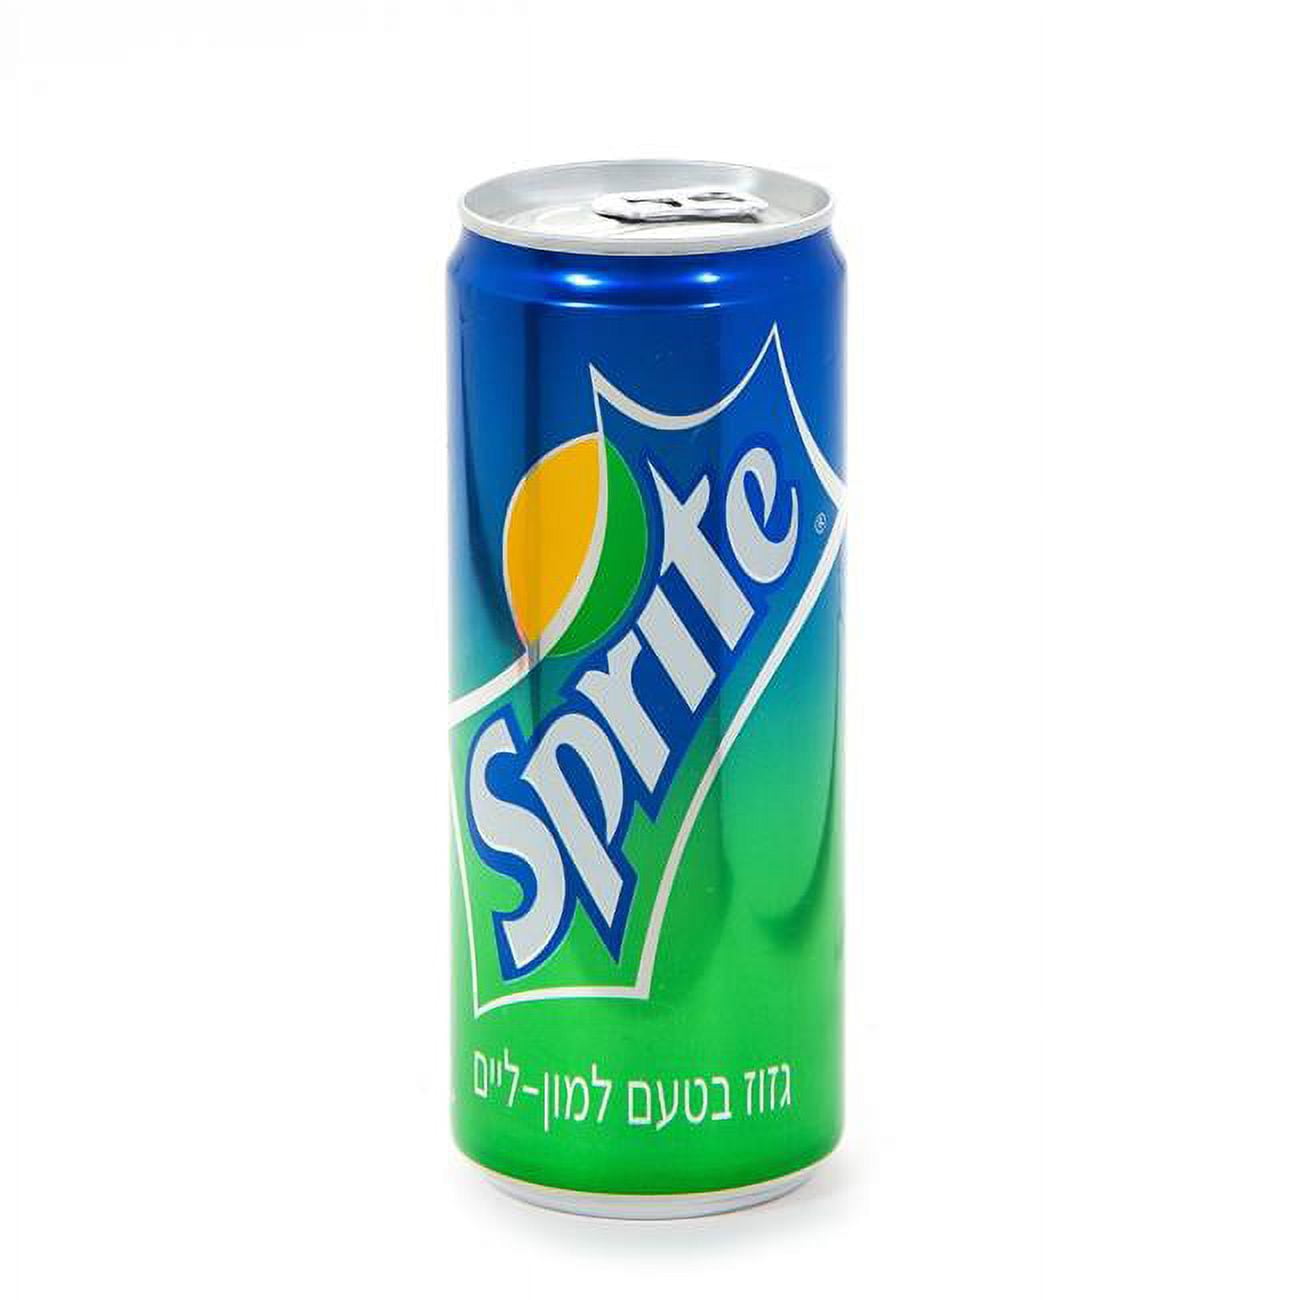 Sprite CC024 12 oz Can Sprite Soda, Made in Israel Kosher Soda